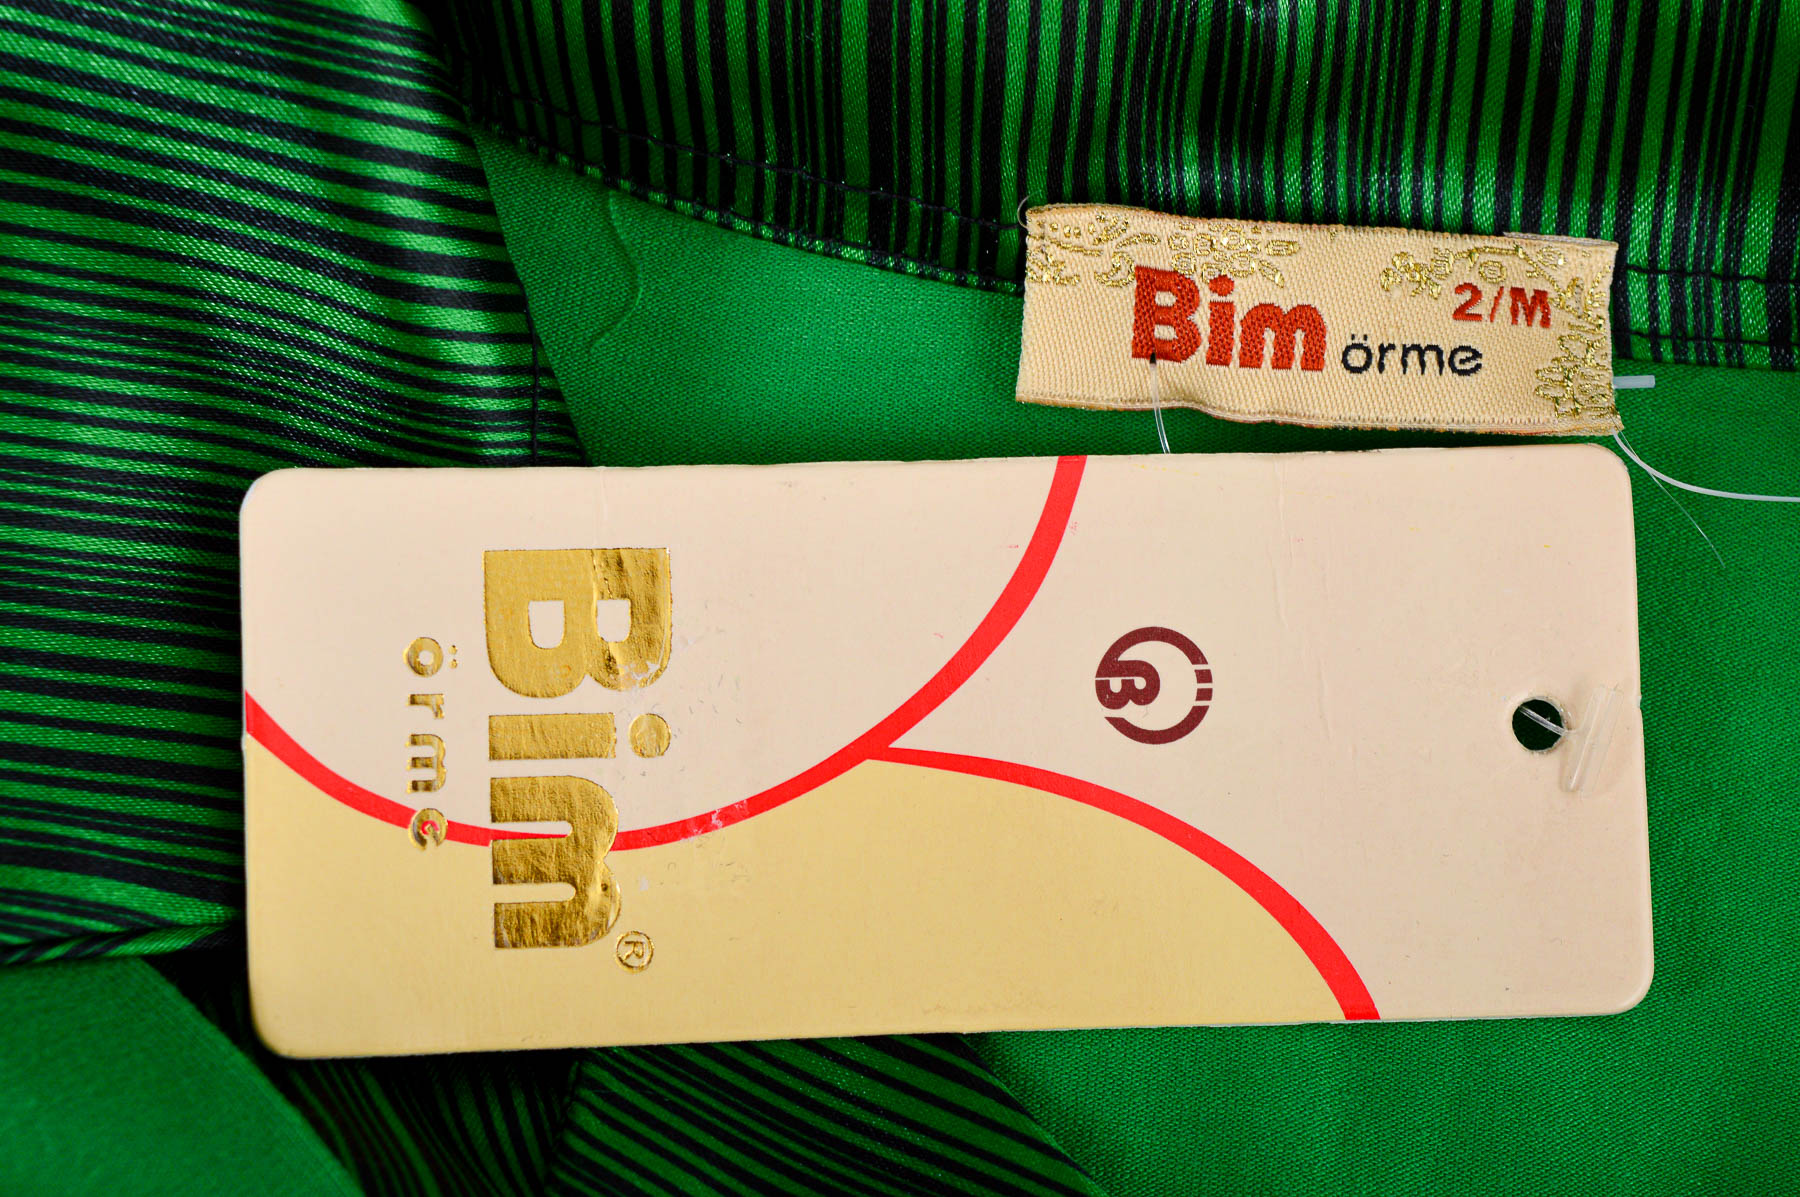 Women's blouse - Bim orme - 2